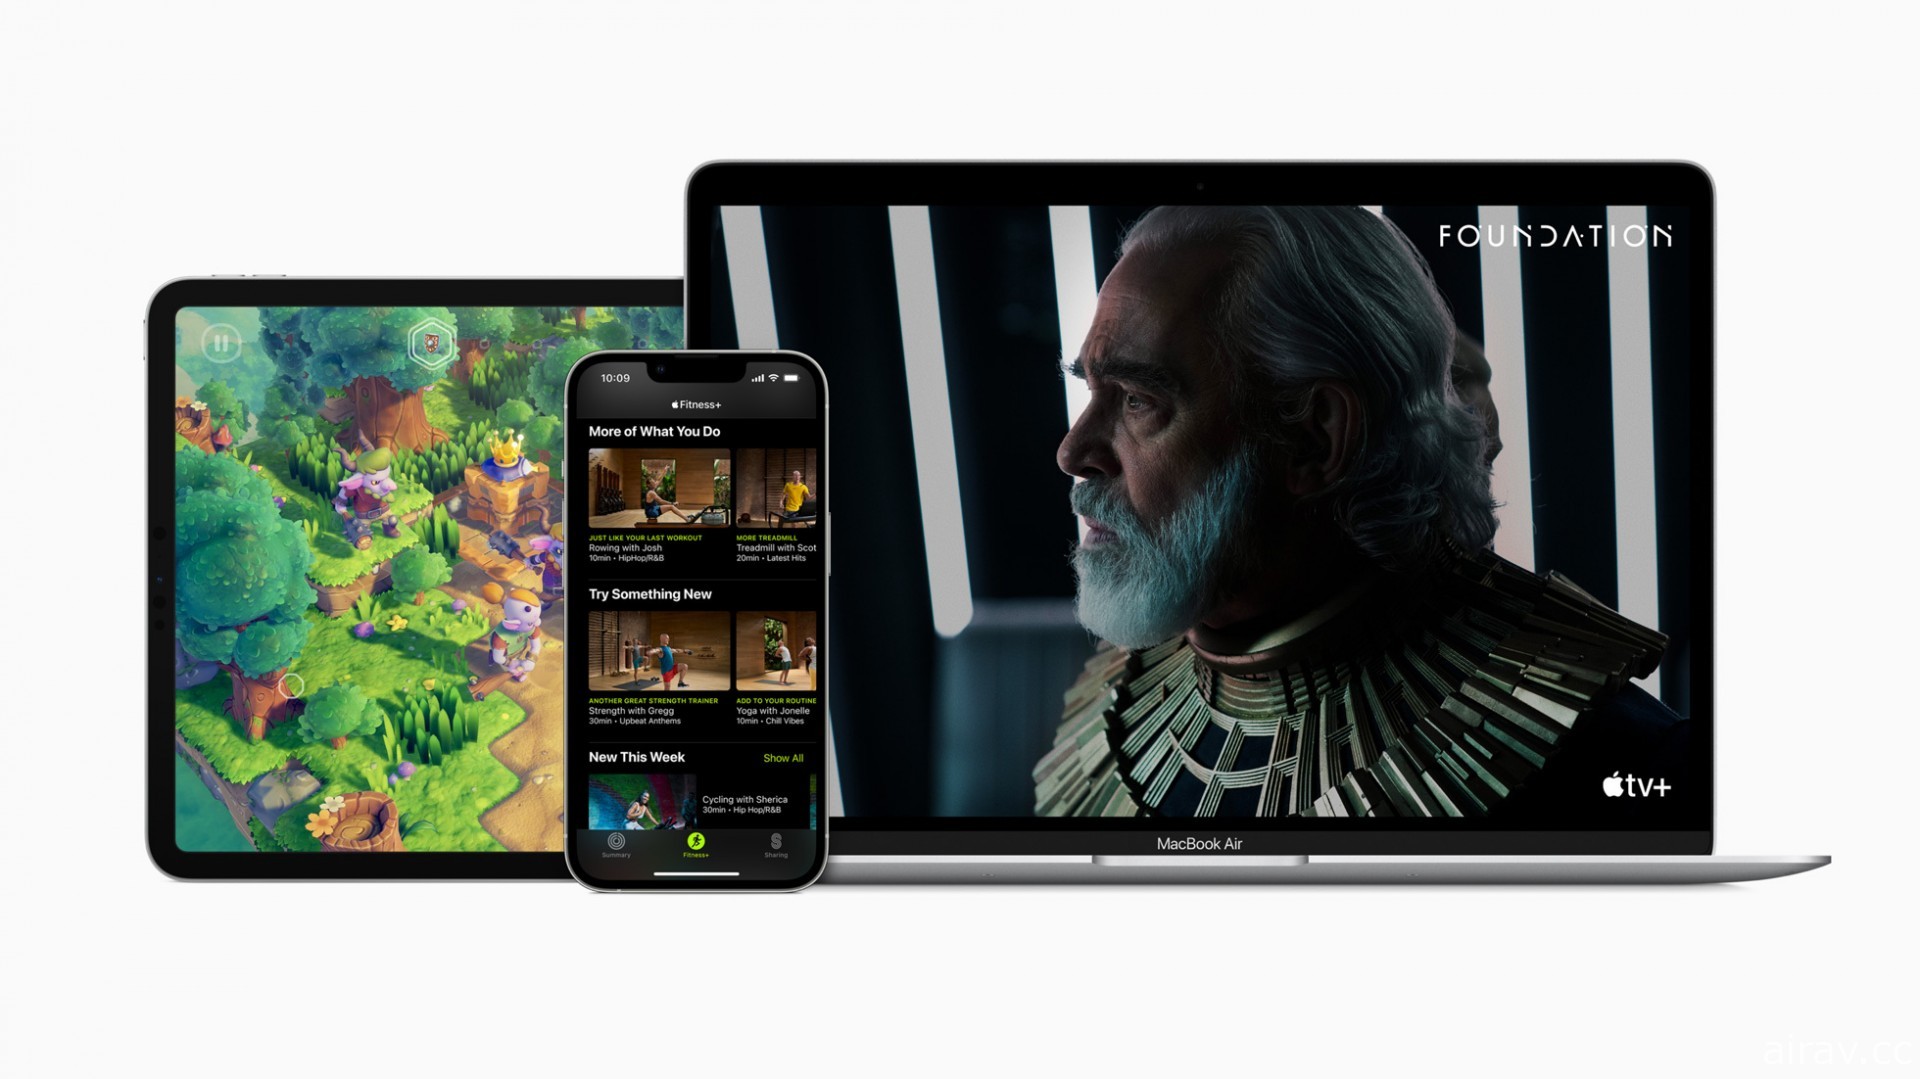 Apple 回顾 2021 年内容 展望 2022 年即将推出的新游戏、音乐、电影等更多体验